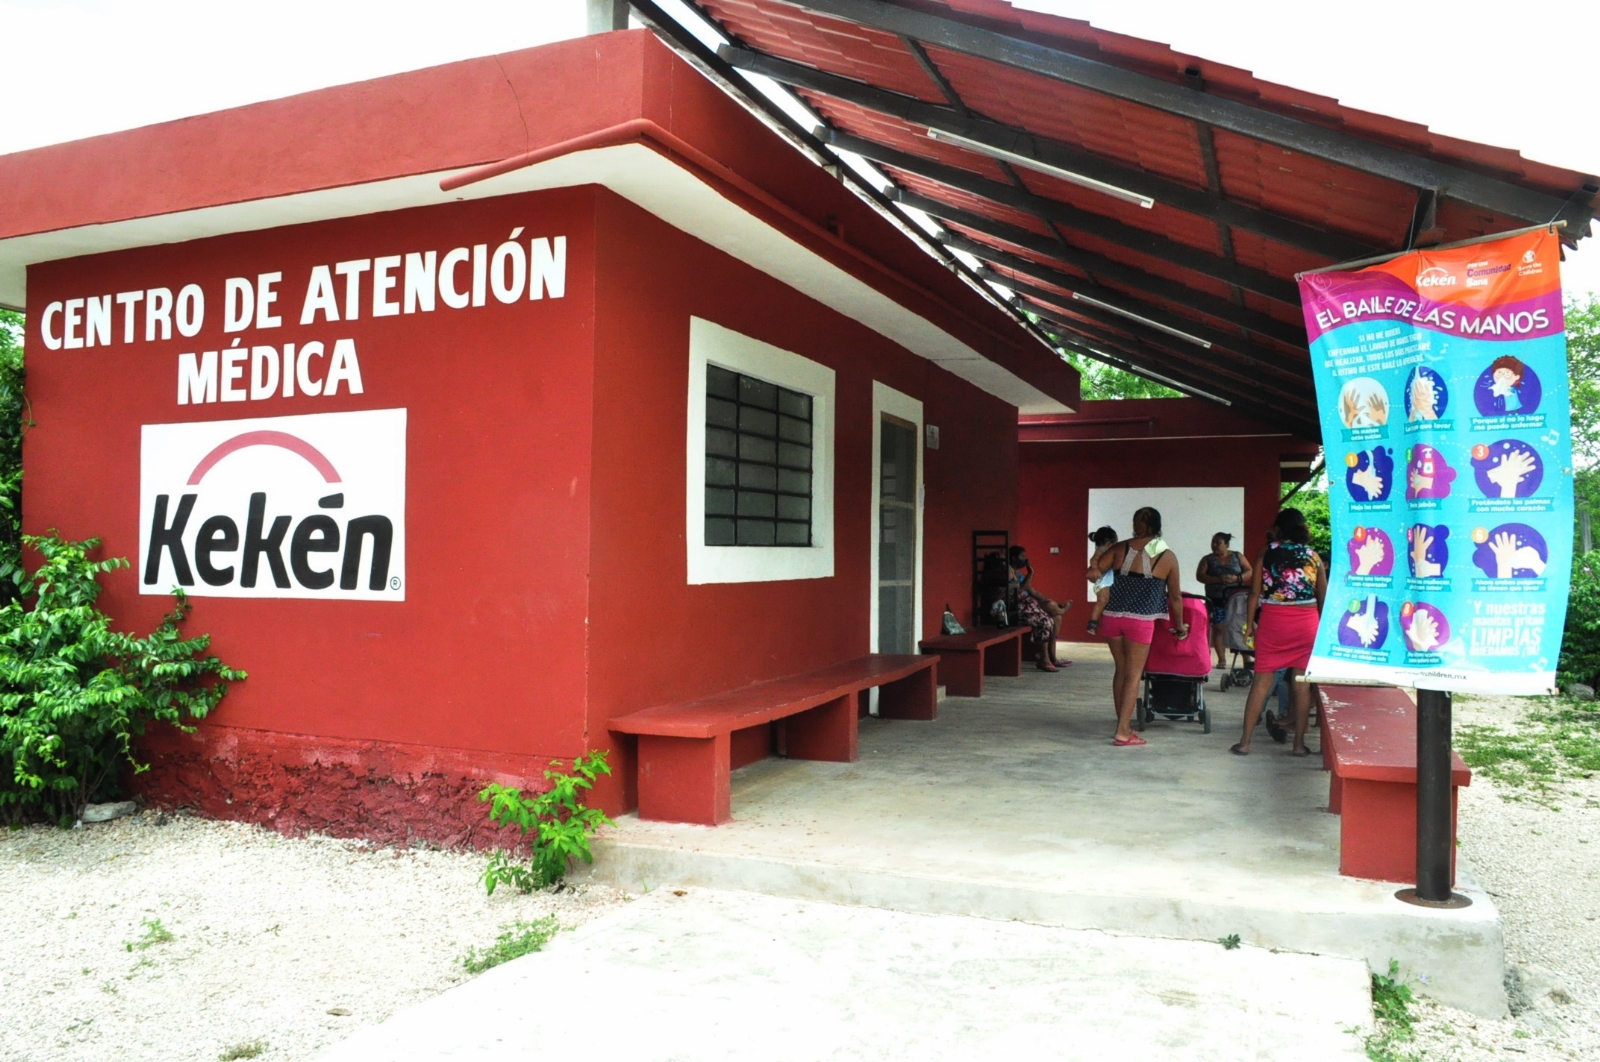 Kekén presume consultorios médicos sin definir sedes en Yucatán